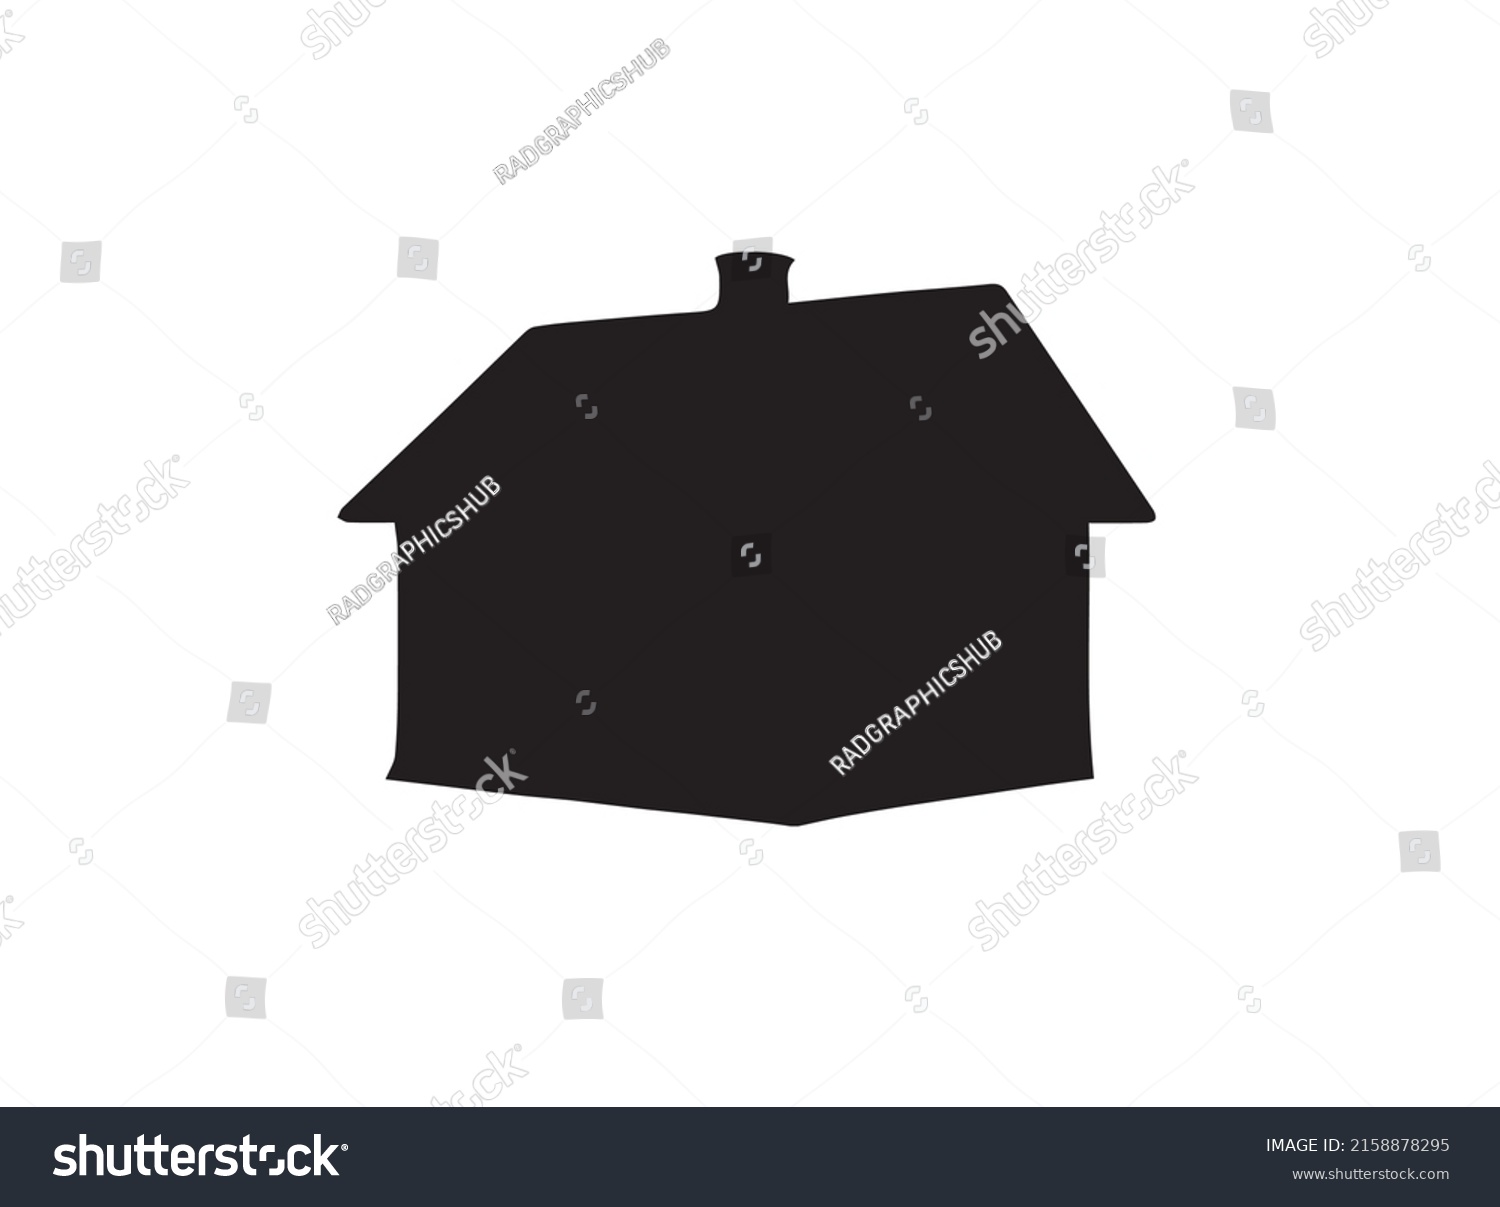 253 House black without door Images, Stock Photos & Vectors | Shutterstock